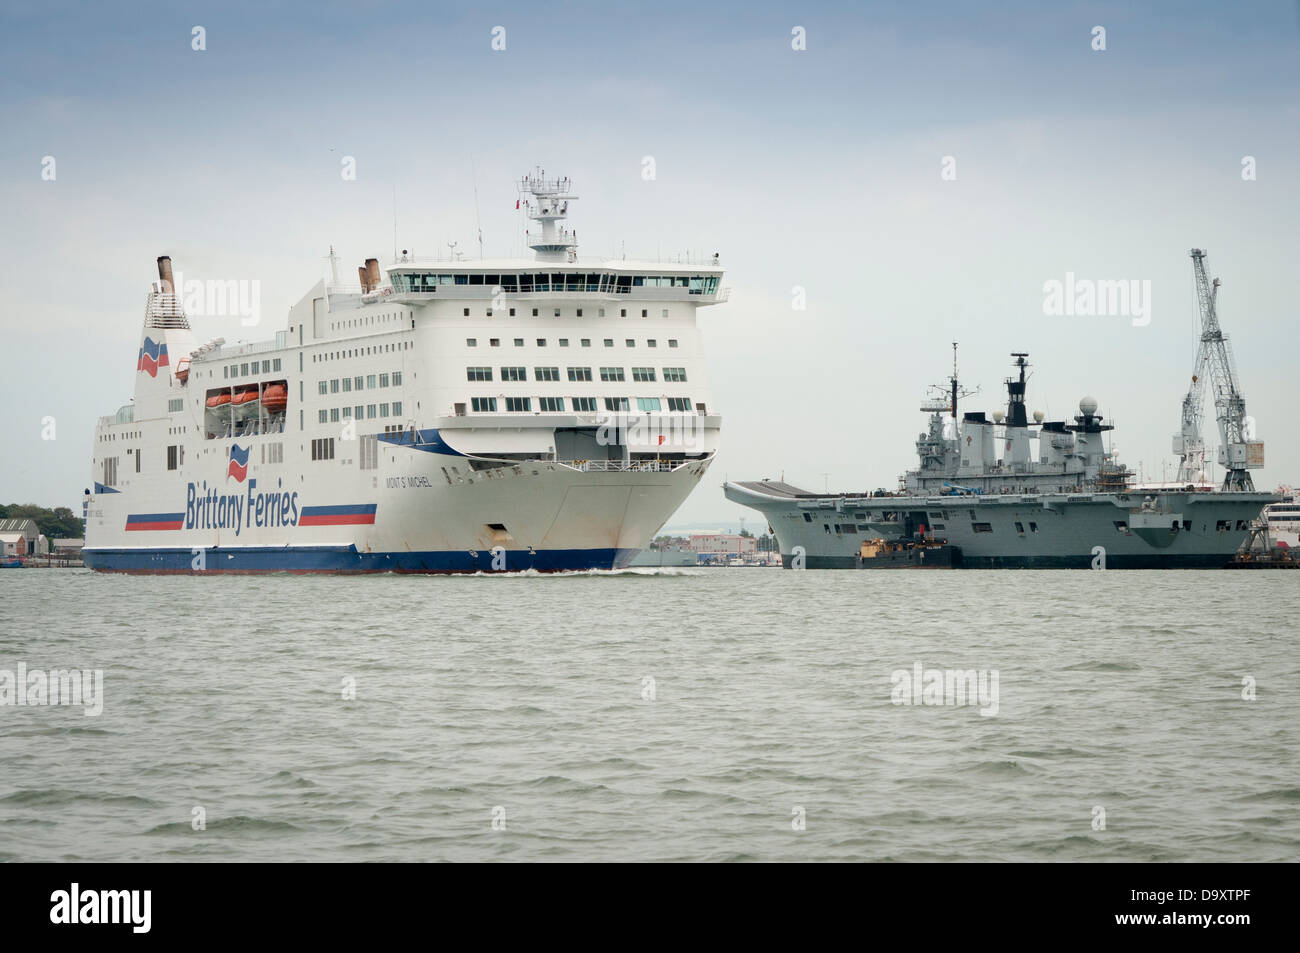 Brittany Ferries, Mont St Michel de quitter le port de Portsmouth en route pour la France Banque D'Images